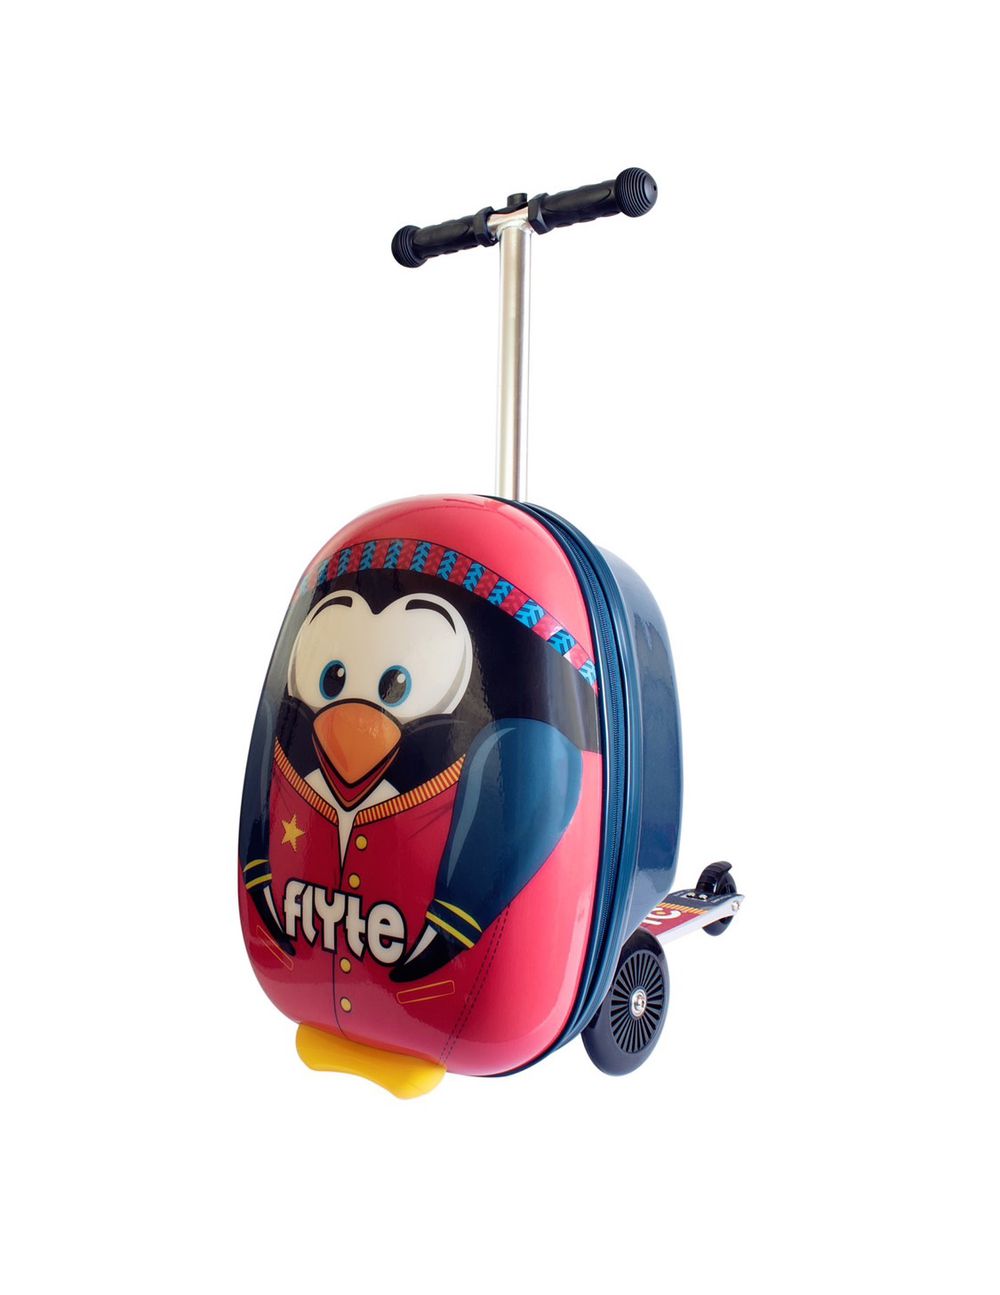 英國Flyte - 多功能滑板車-派瑞企鵝-紅黑色 (18吋)-3.6KGS(可變型行李箱)